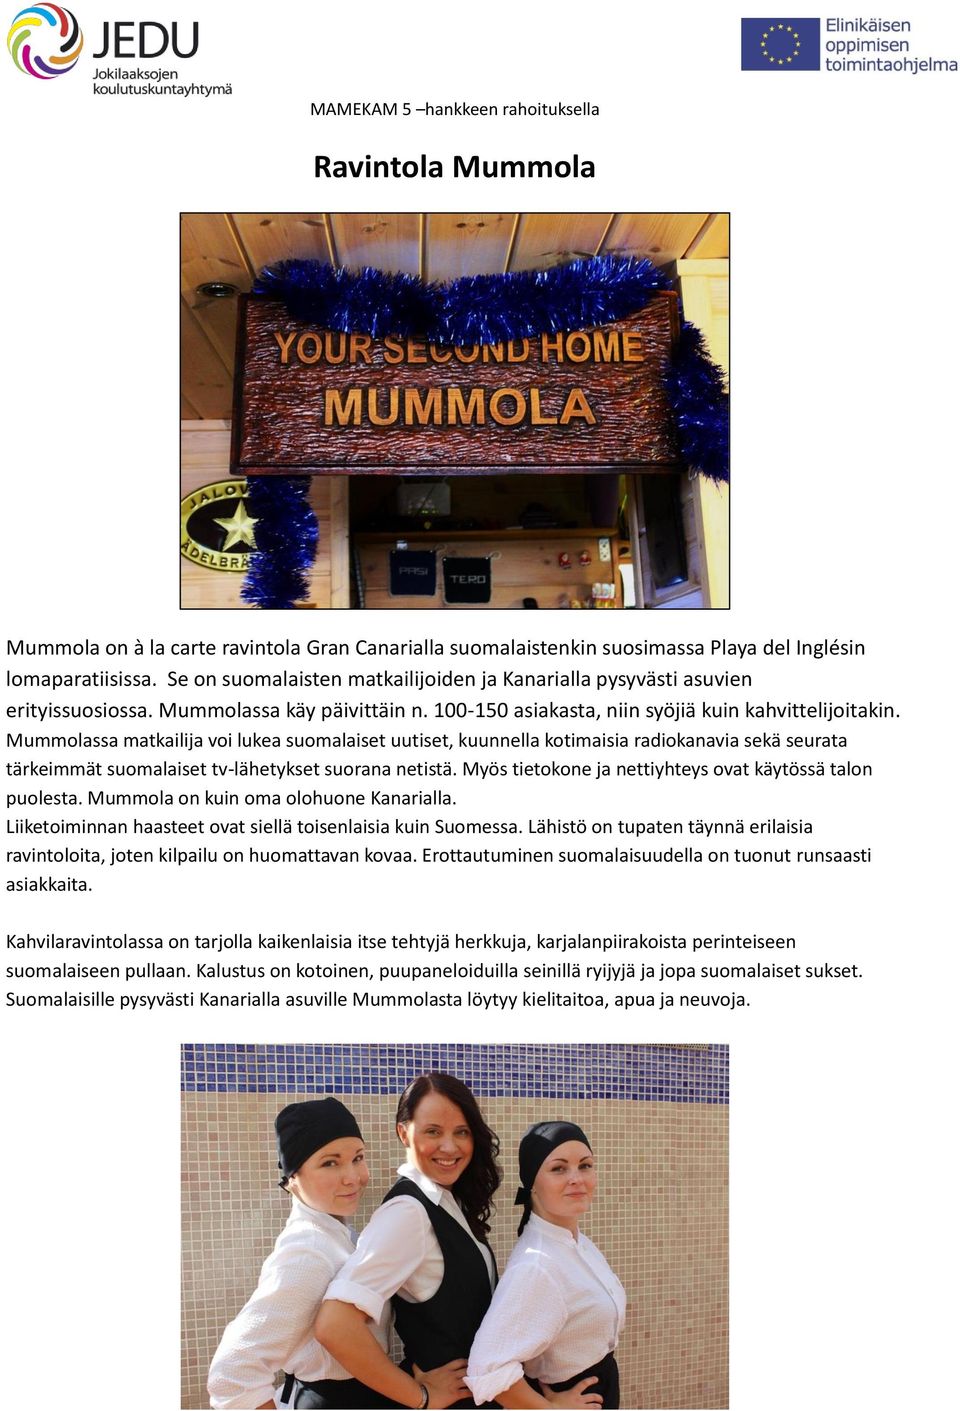 Mummolassa matkailija voi lukea suomalaiset uutiset, kuunnella kotimaisia radiokanavia sekä seurata tärkeimmät suomalaiset tv-lähetykset suorana netistä.